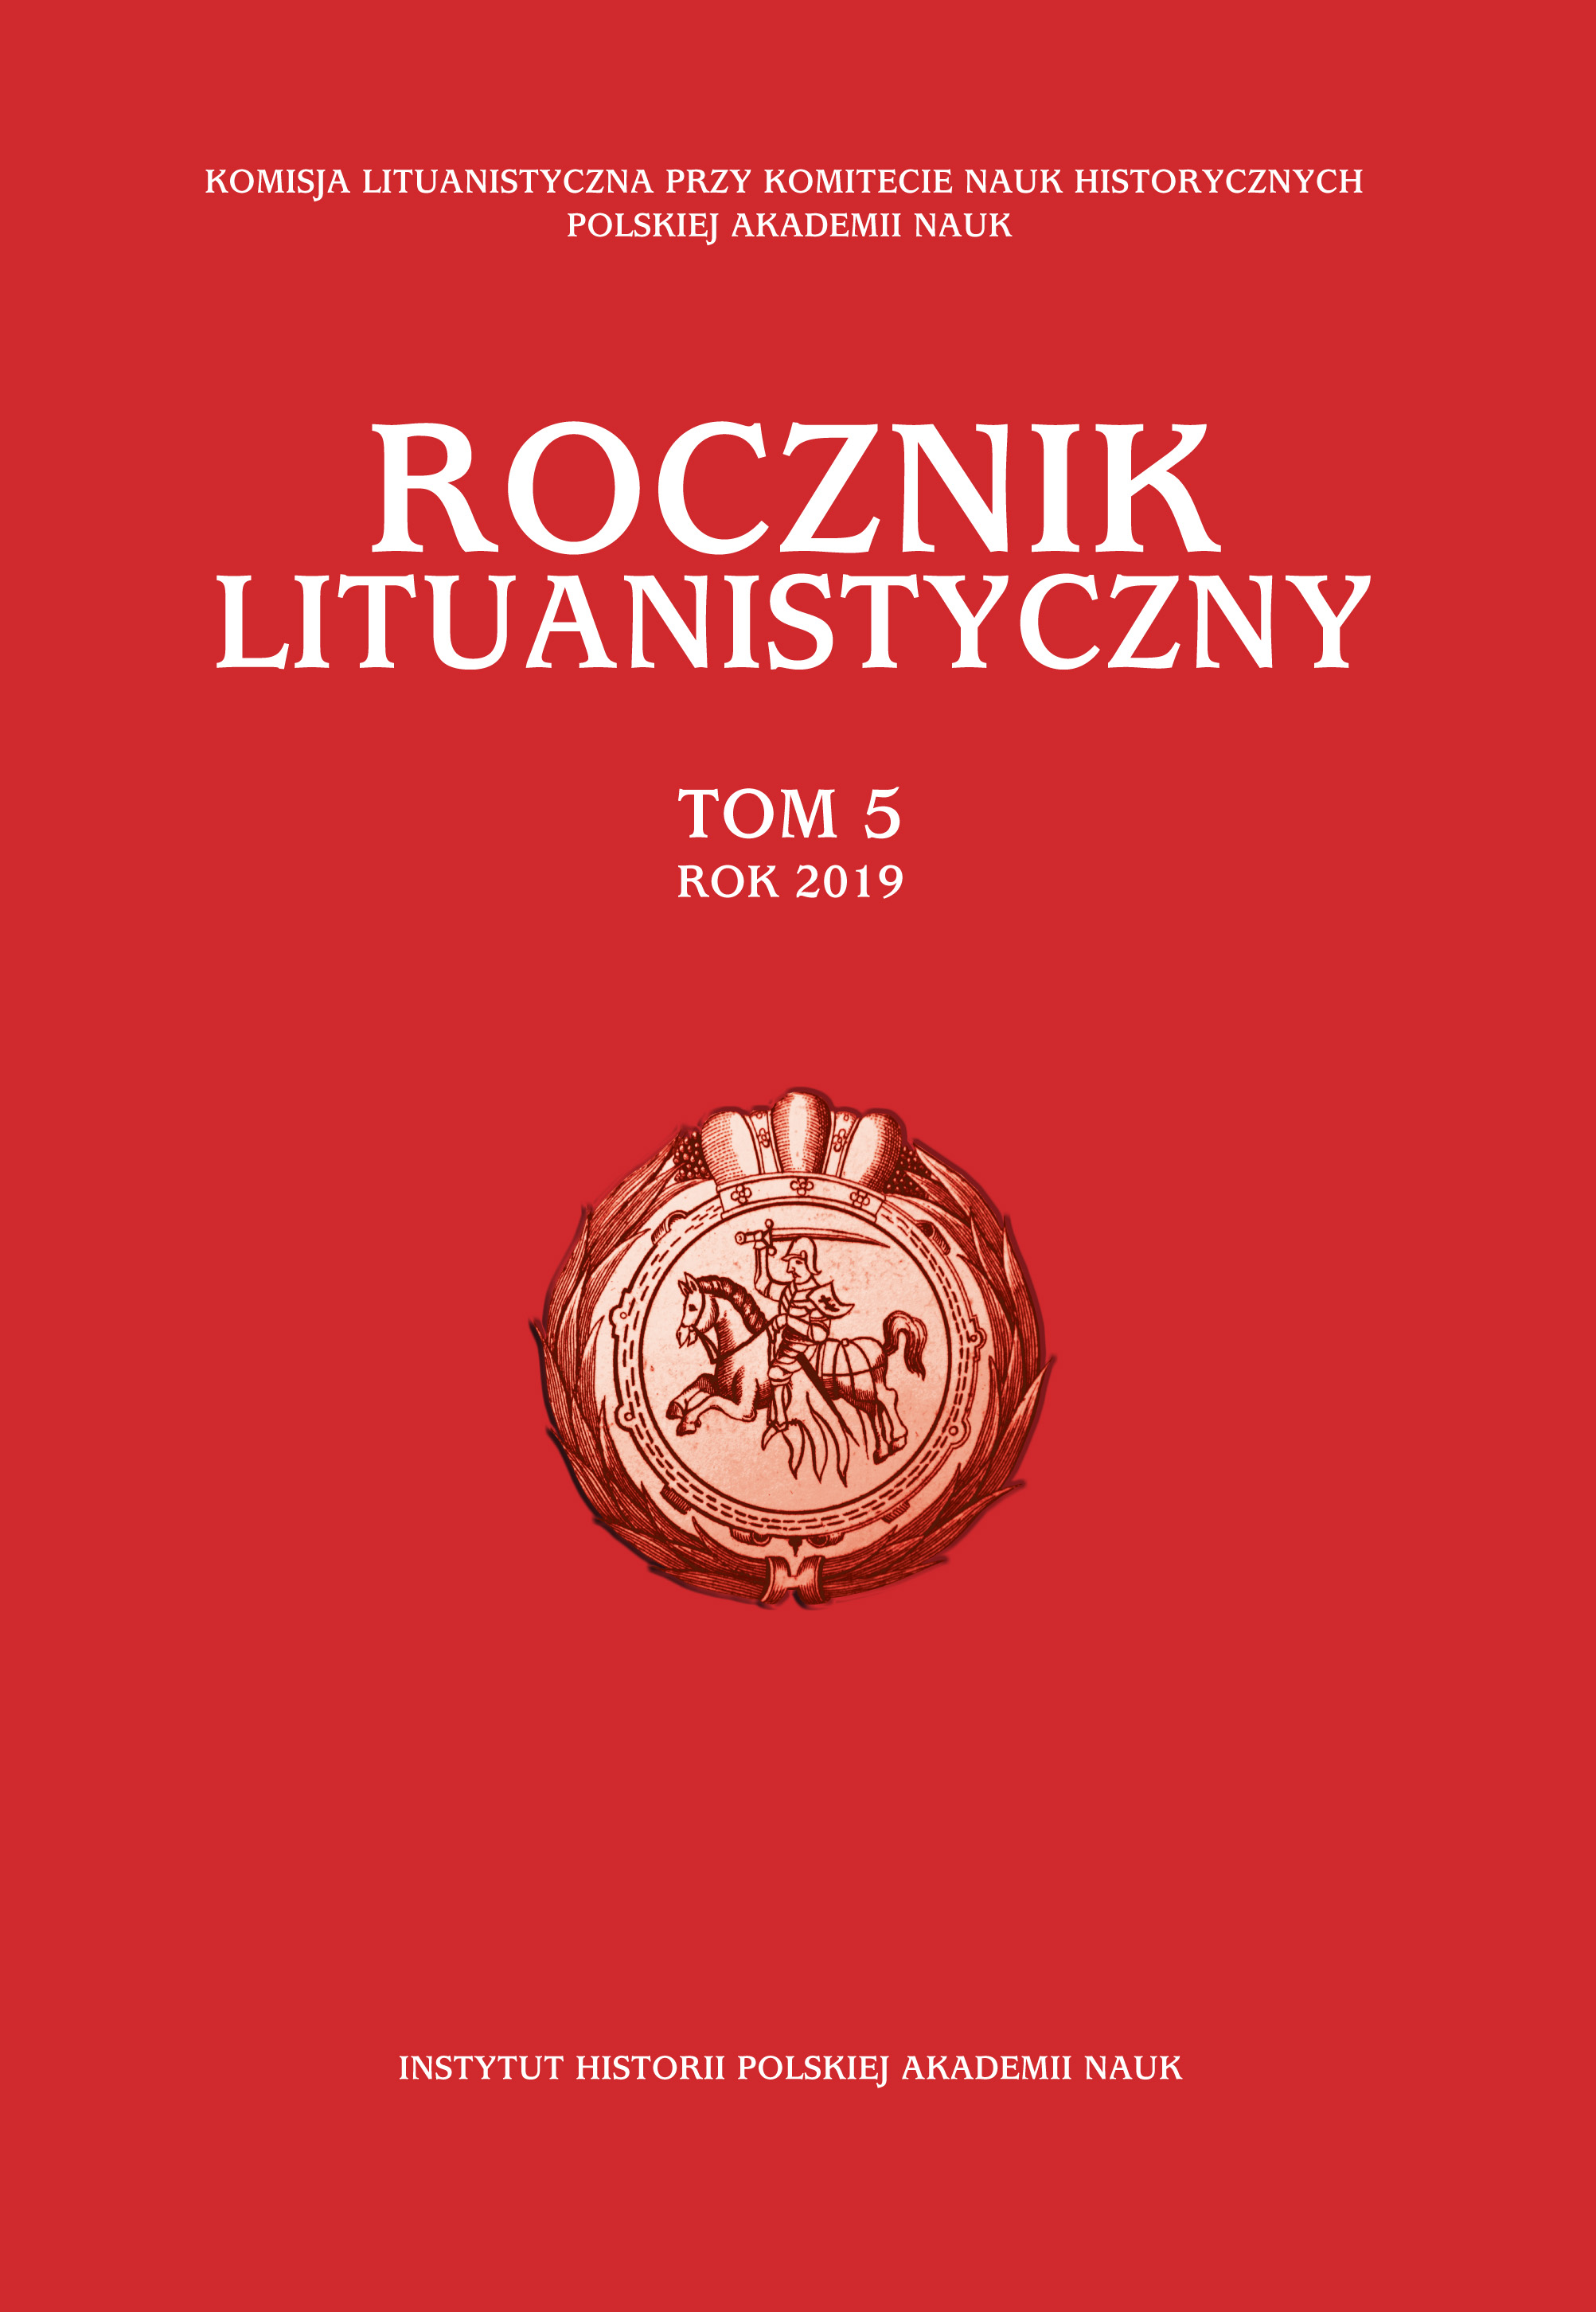 Koszty wystawienia regimentu piechoty cudzoziemskiej w Wielkim Księstwie Litewskim w pierwszej połowie XVII wieku